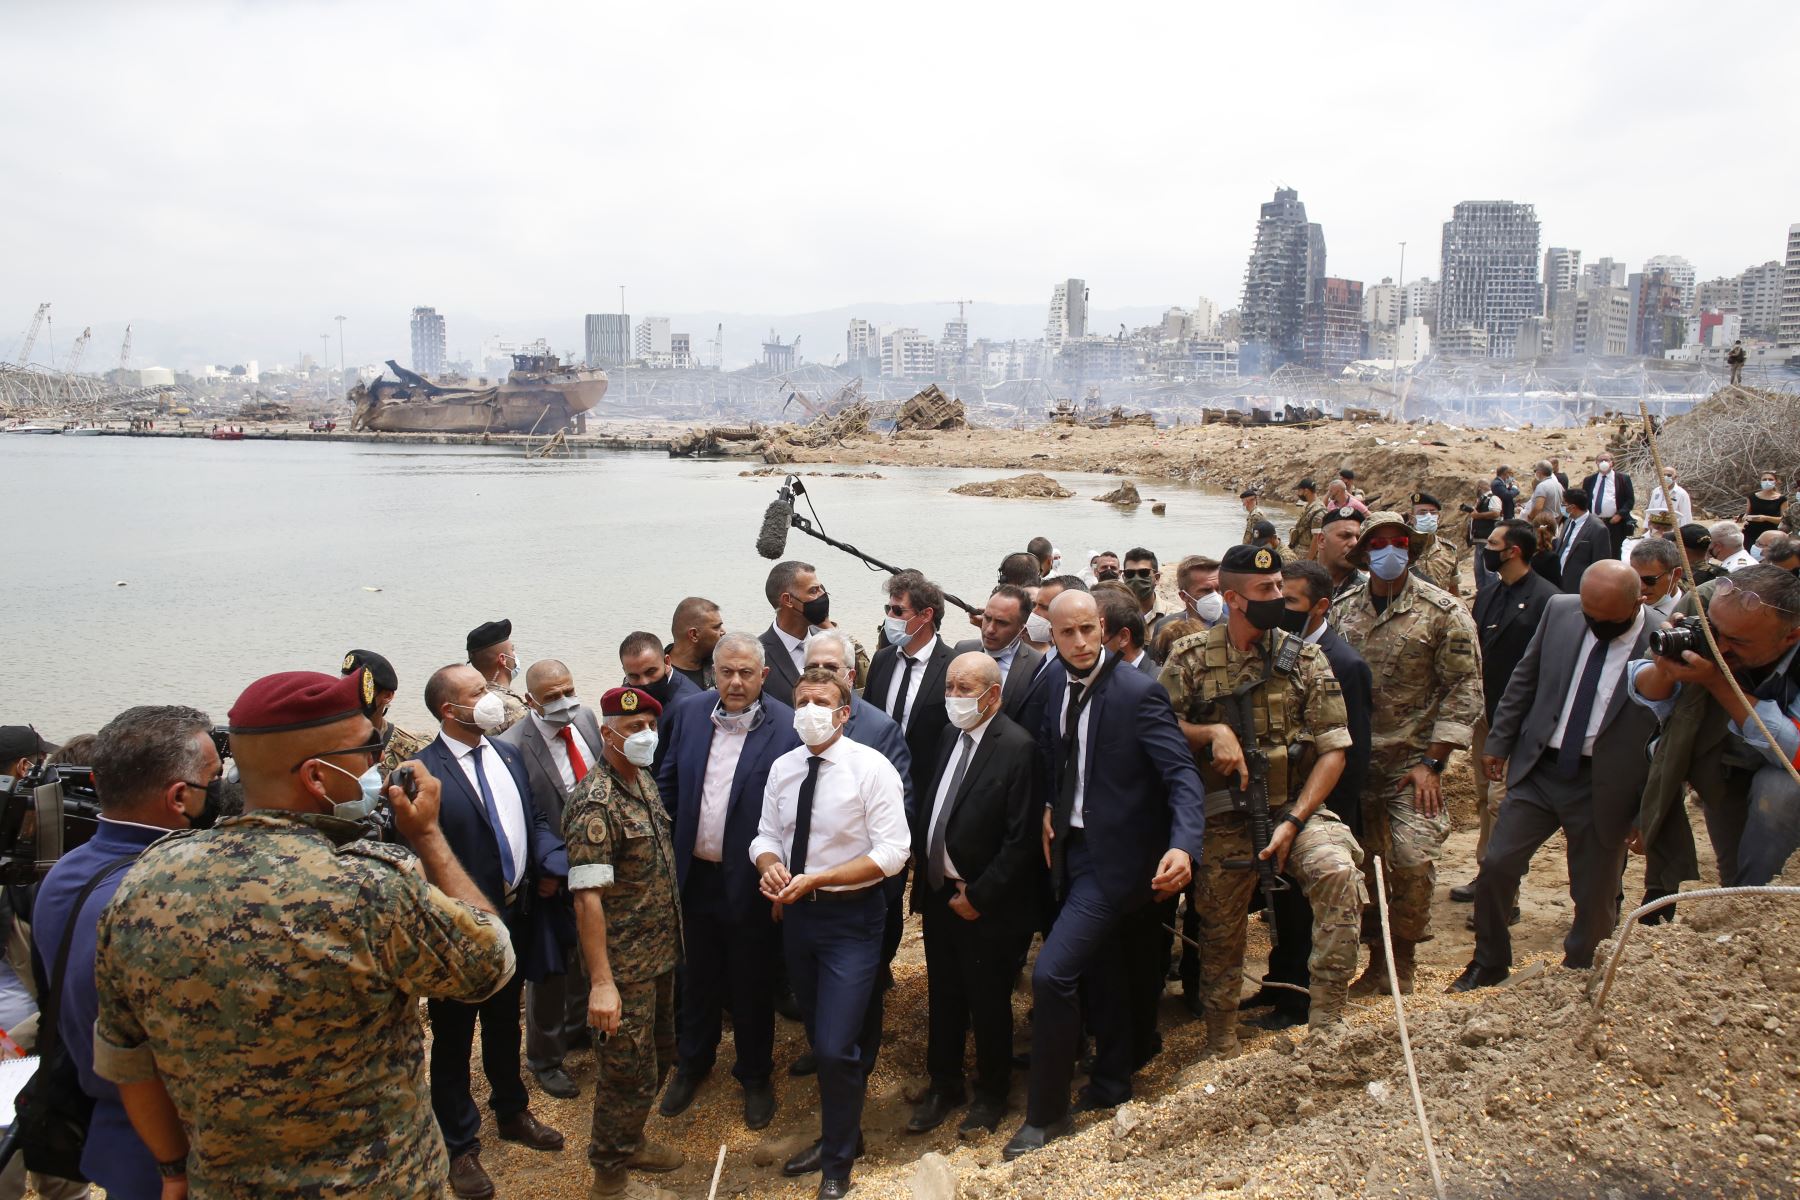 El presidente francés Emmanuel Macron, flanqueado por el ministro de Asuntos Exteriores francés, Jean-Yves Le Drian, visita el sitio devastado de la explosión en el puerto de Beirut.
Foto: AFP